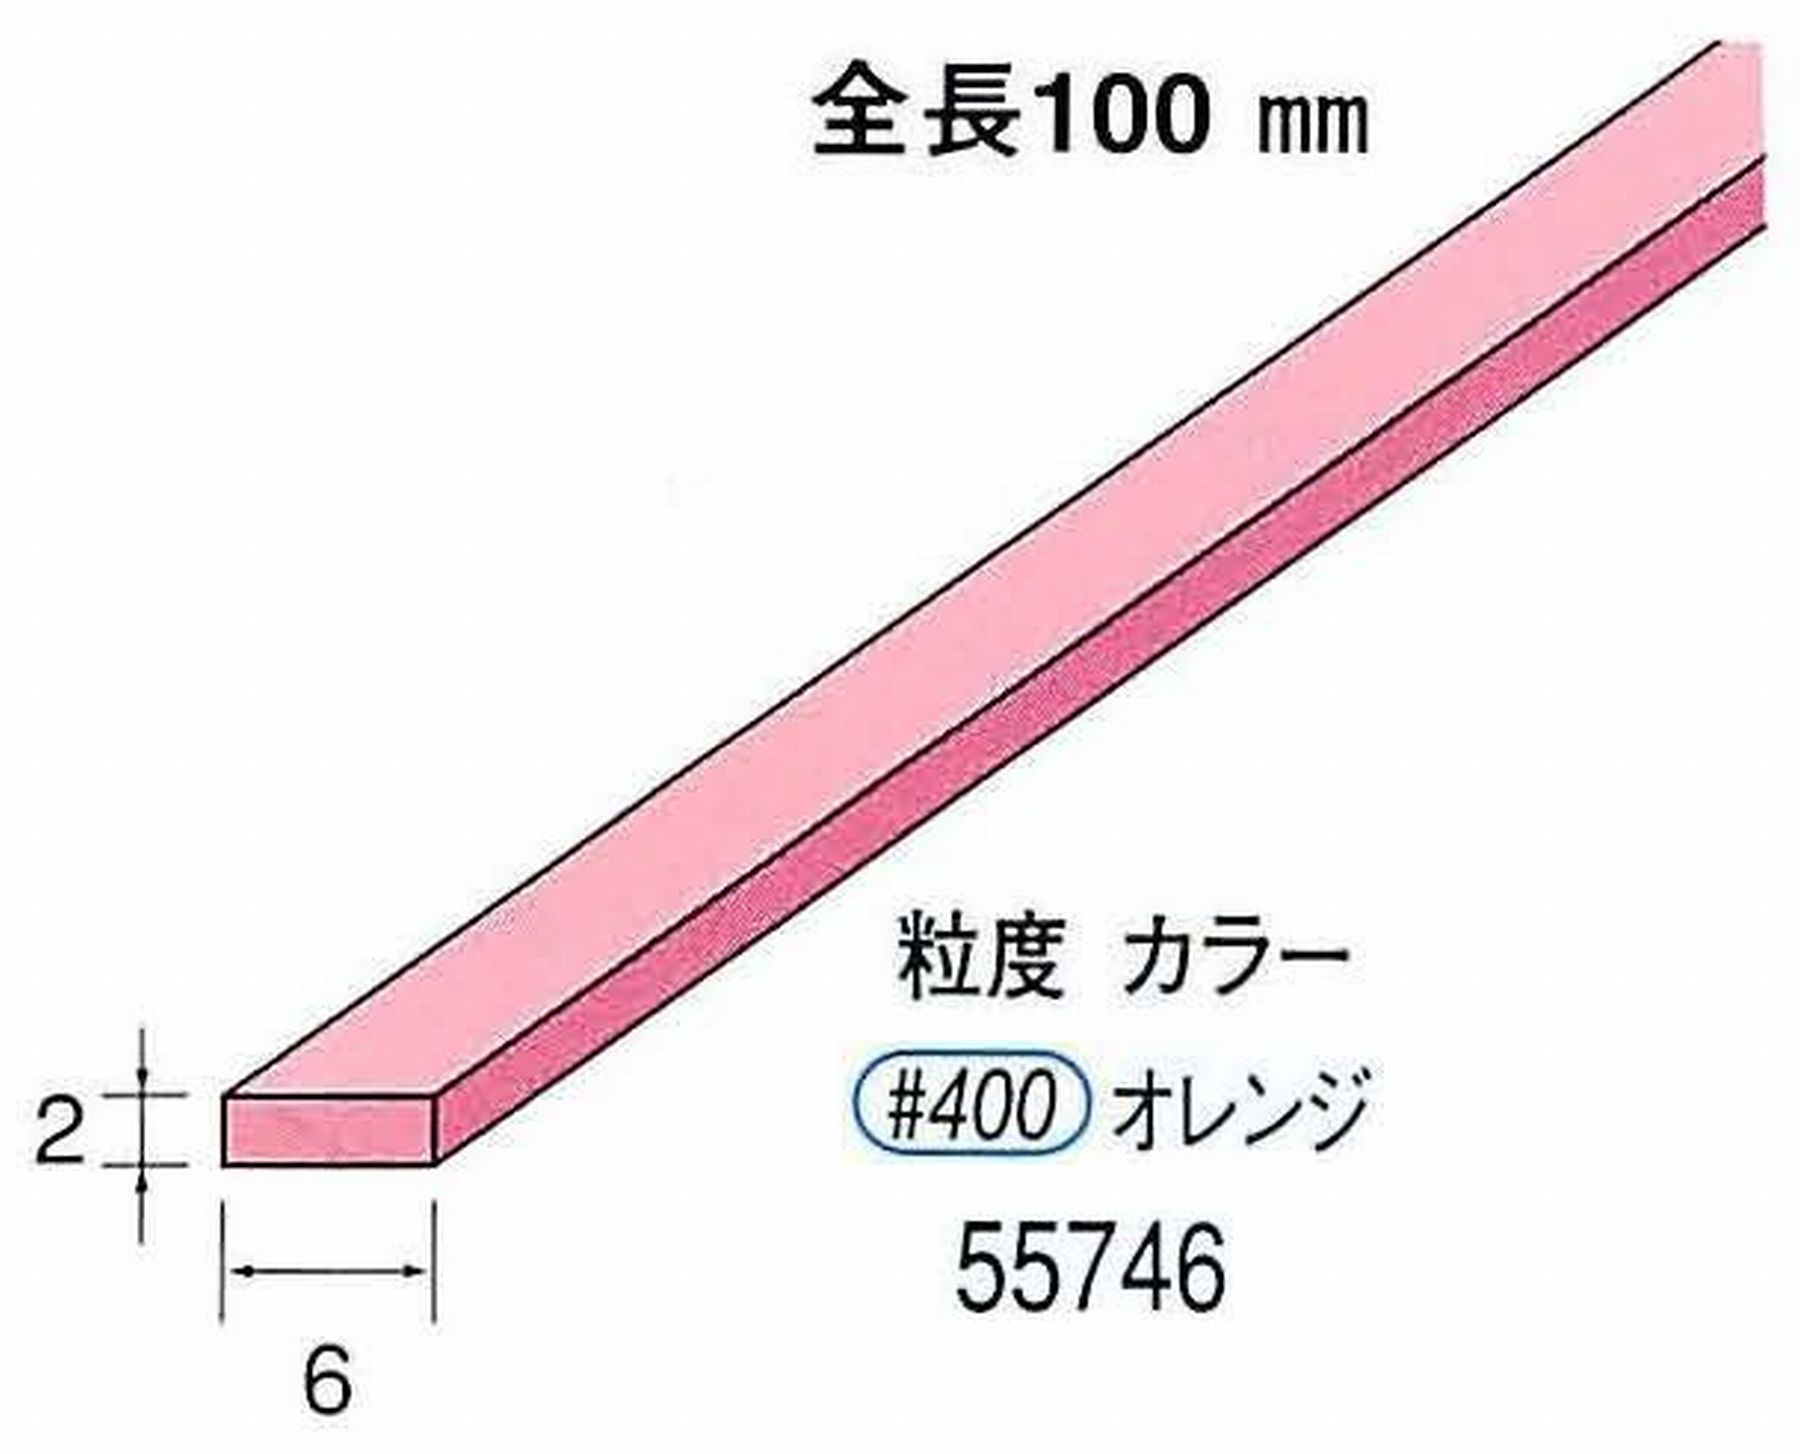 ナカニシ/NAKANISHI セラファイバー砥石 全長100mm オレンジ 55746